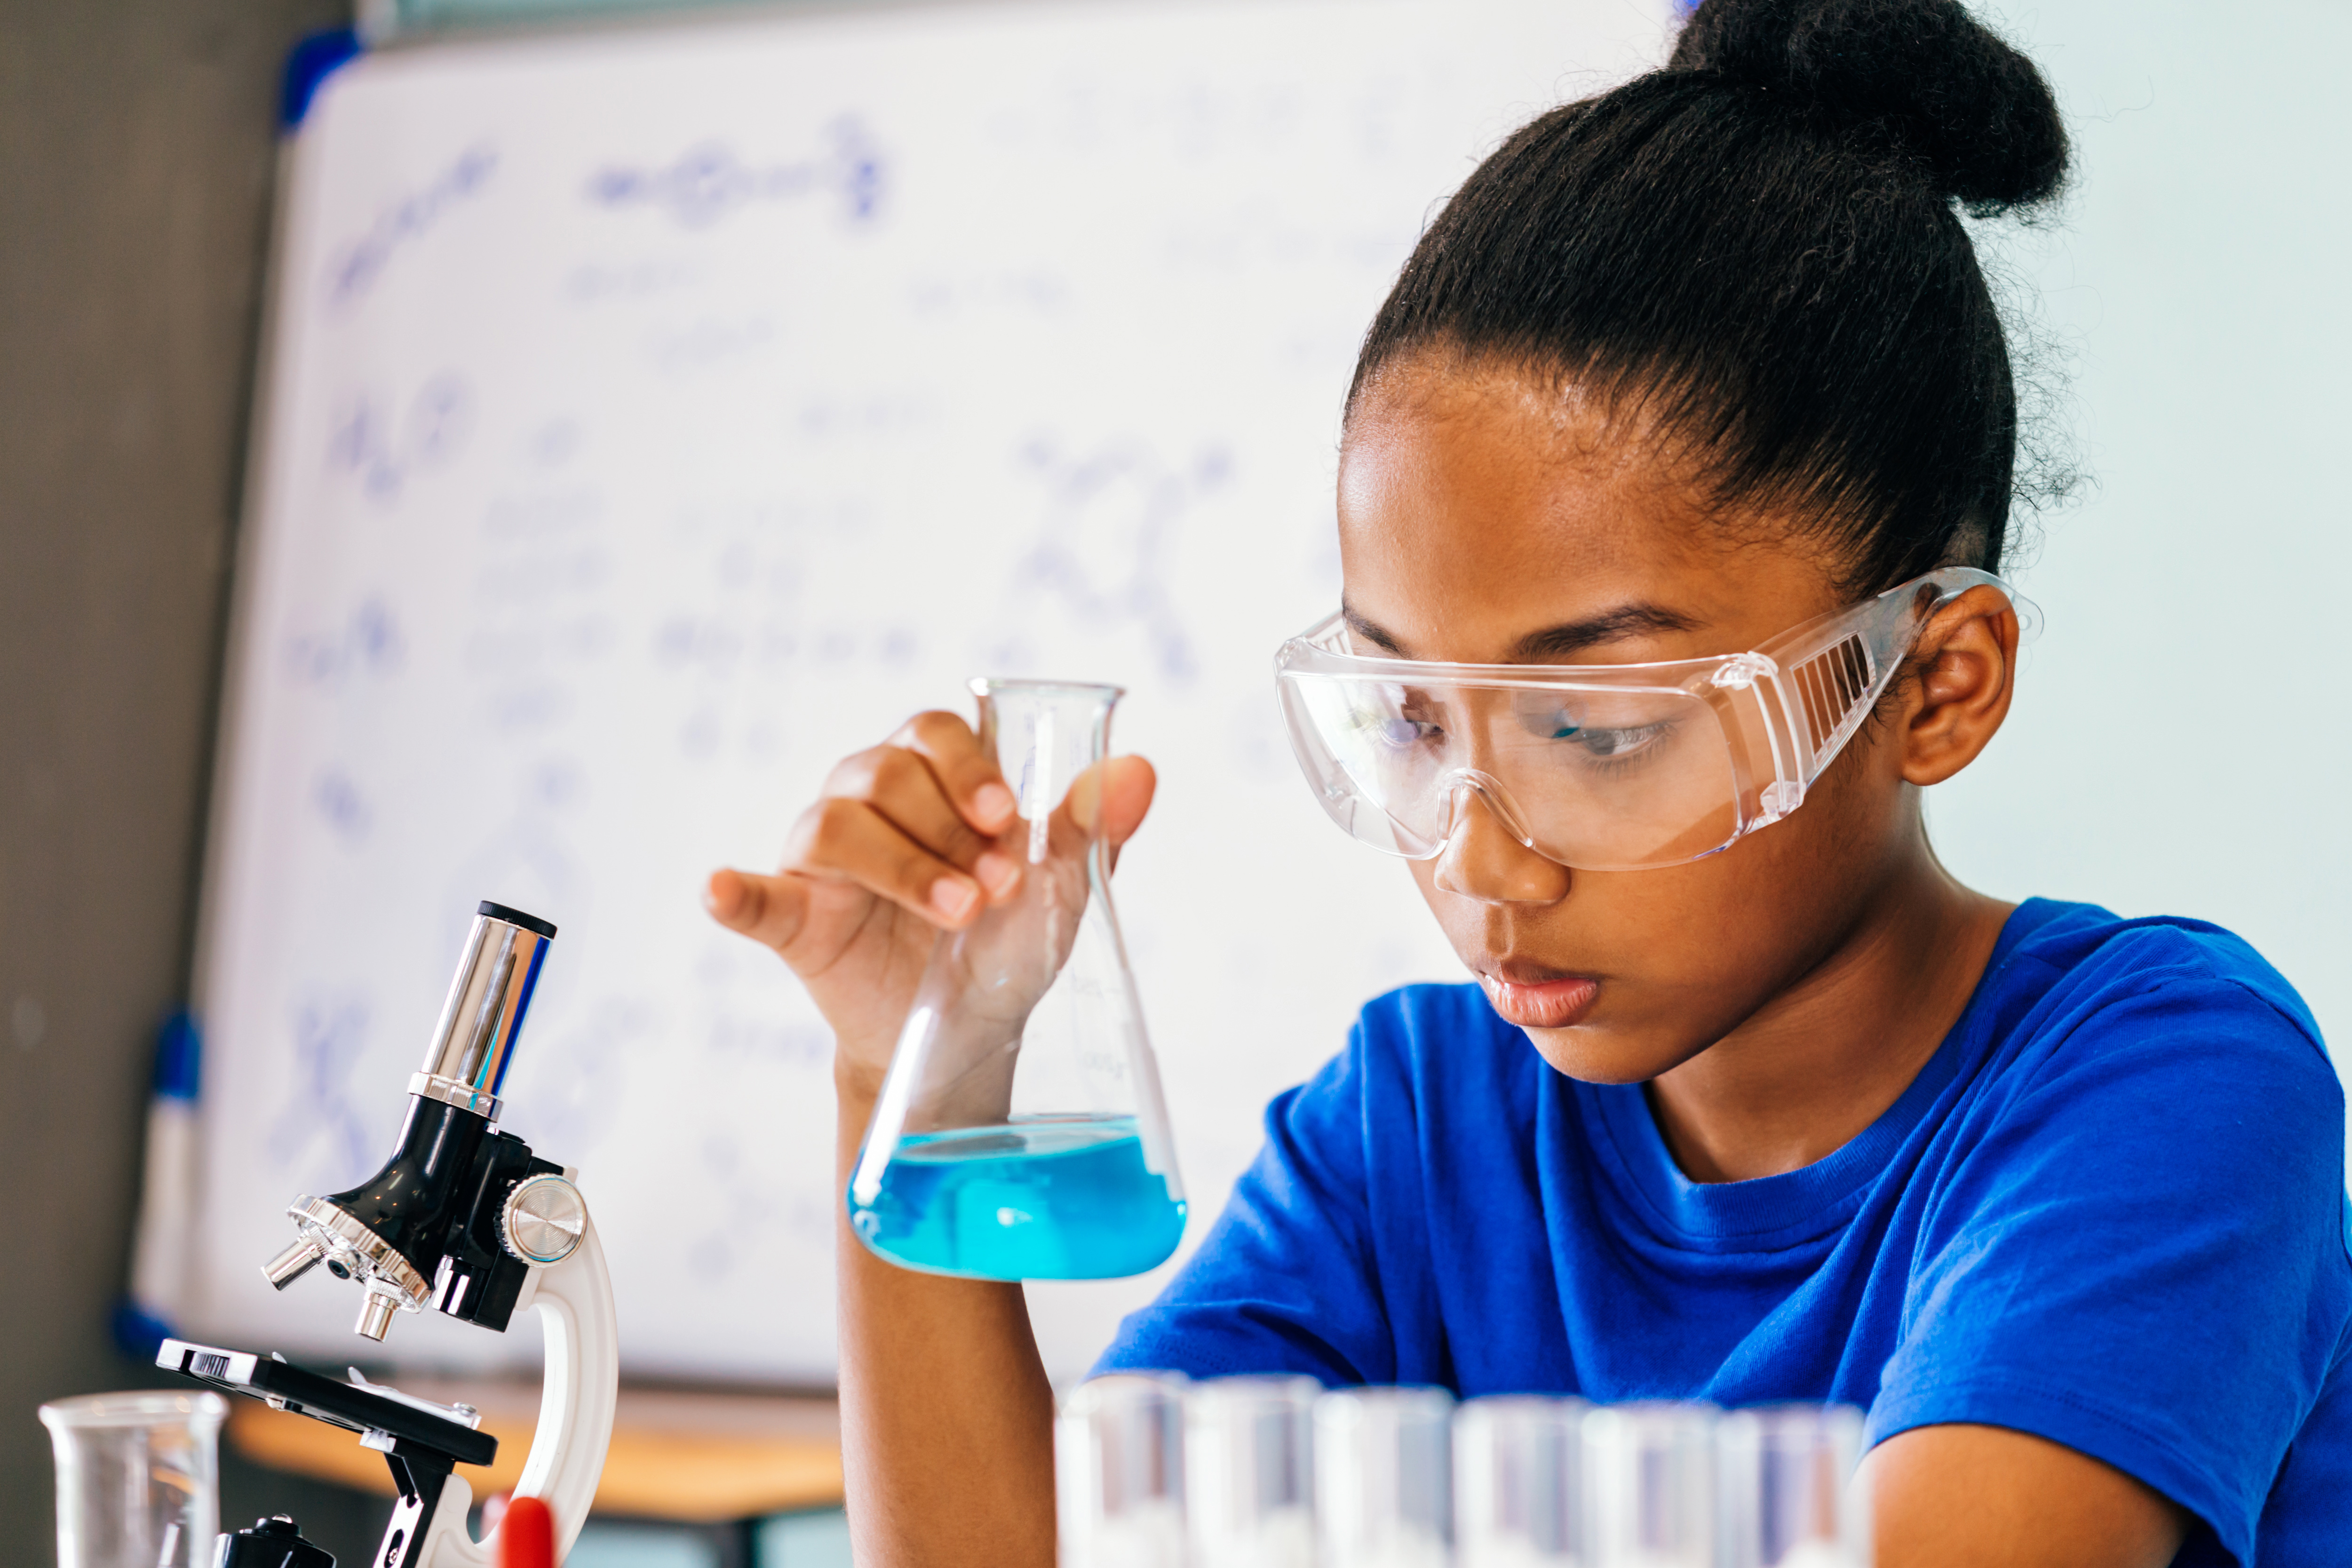 Programa Ciência na Escola estimula o interesse de estudantes de educação básica e pública por ciência